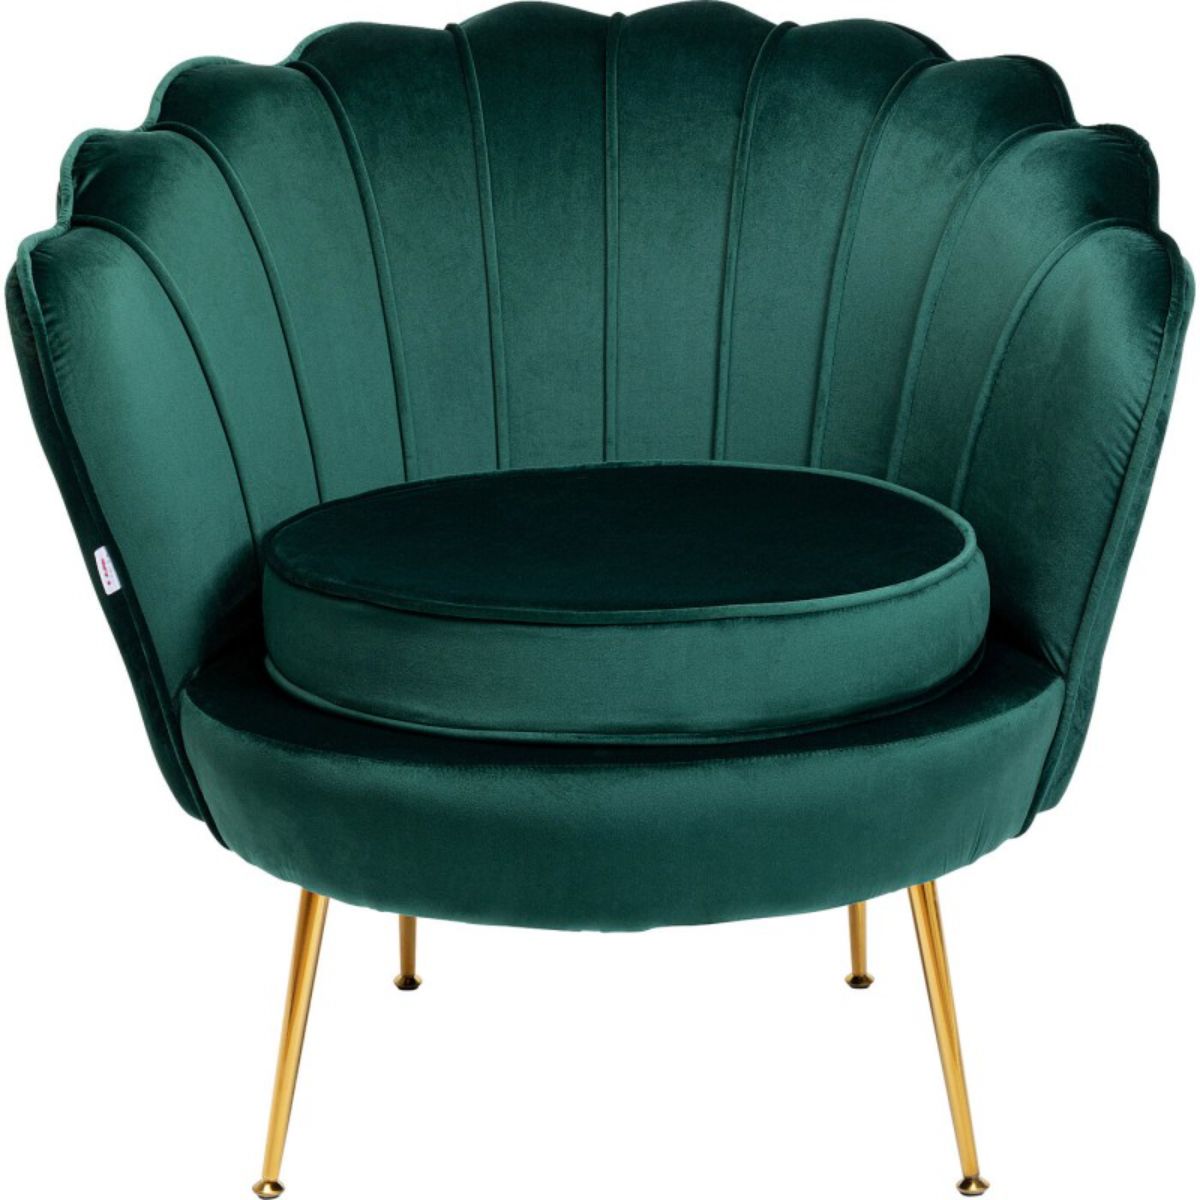 由Kare Design设计的白色背景优雅的蓝绿色口音椅